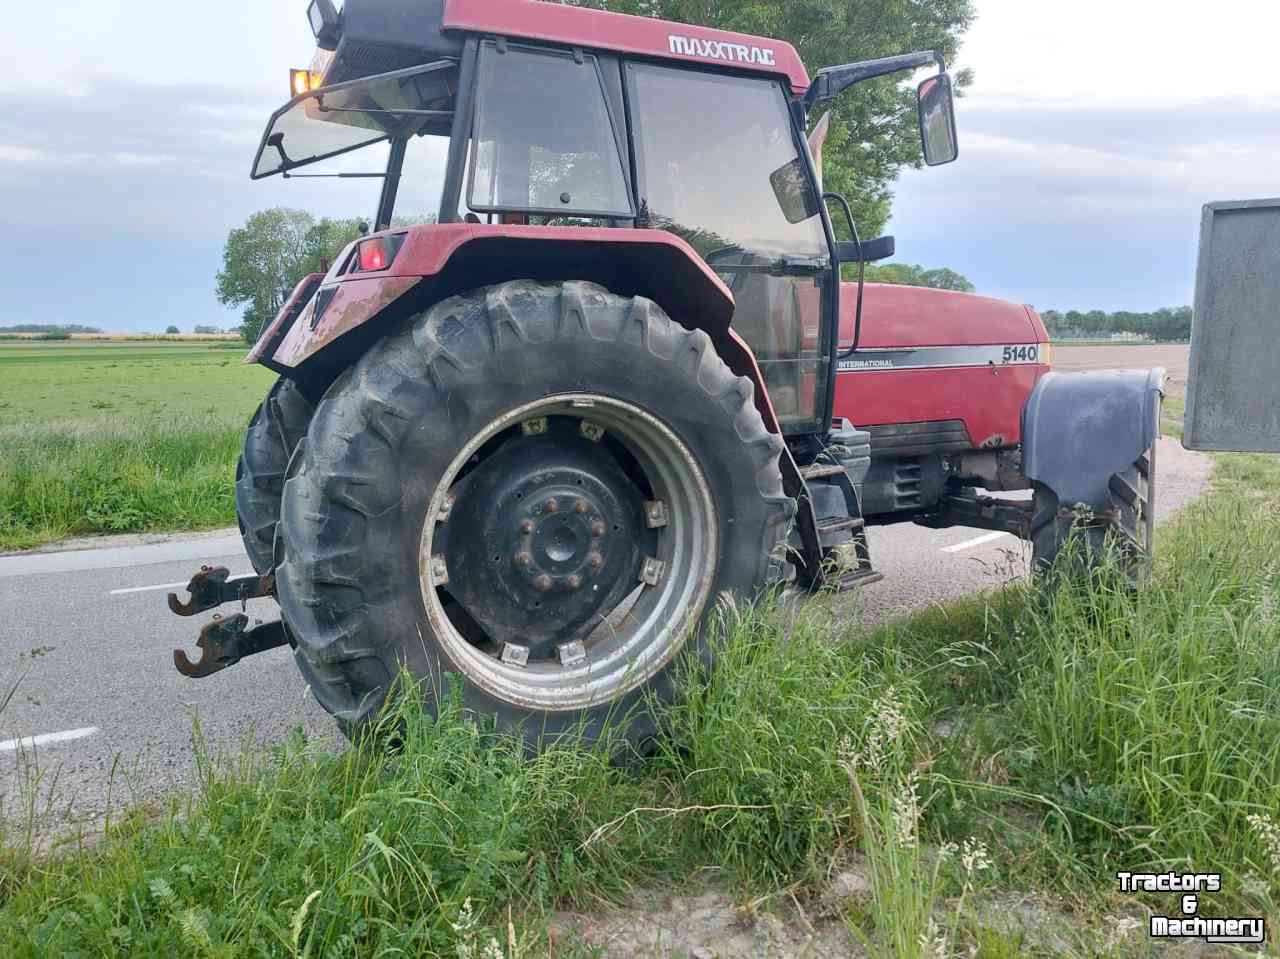 Schlepper / Traktoren Case-IH 5130